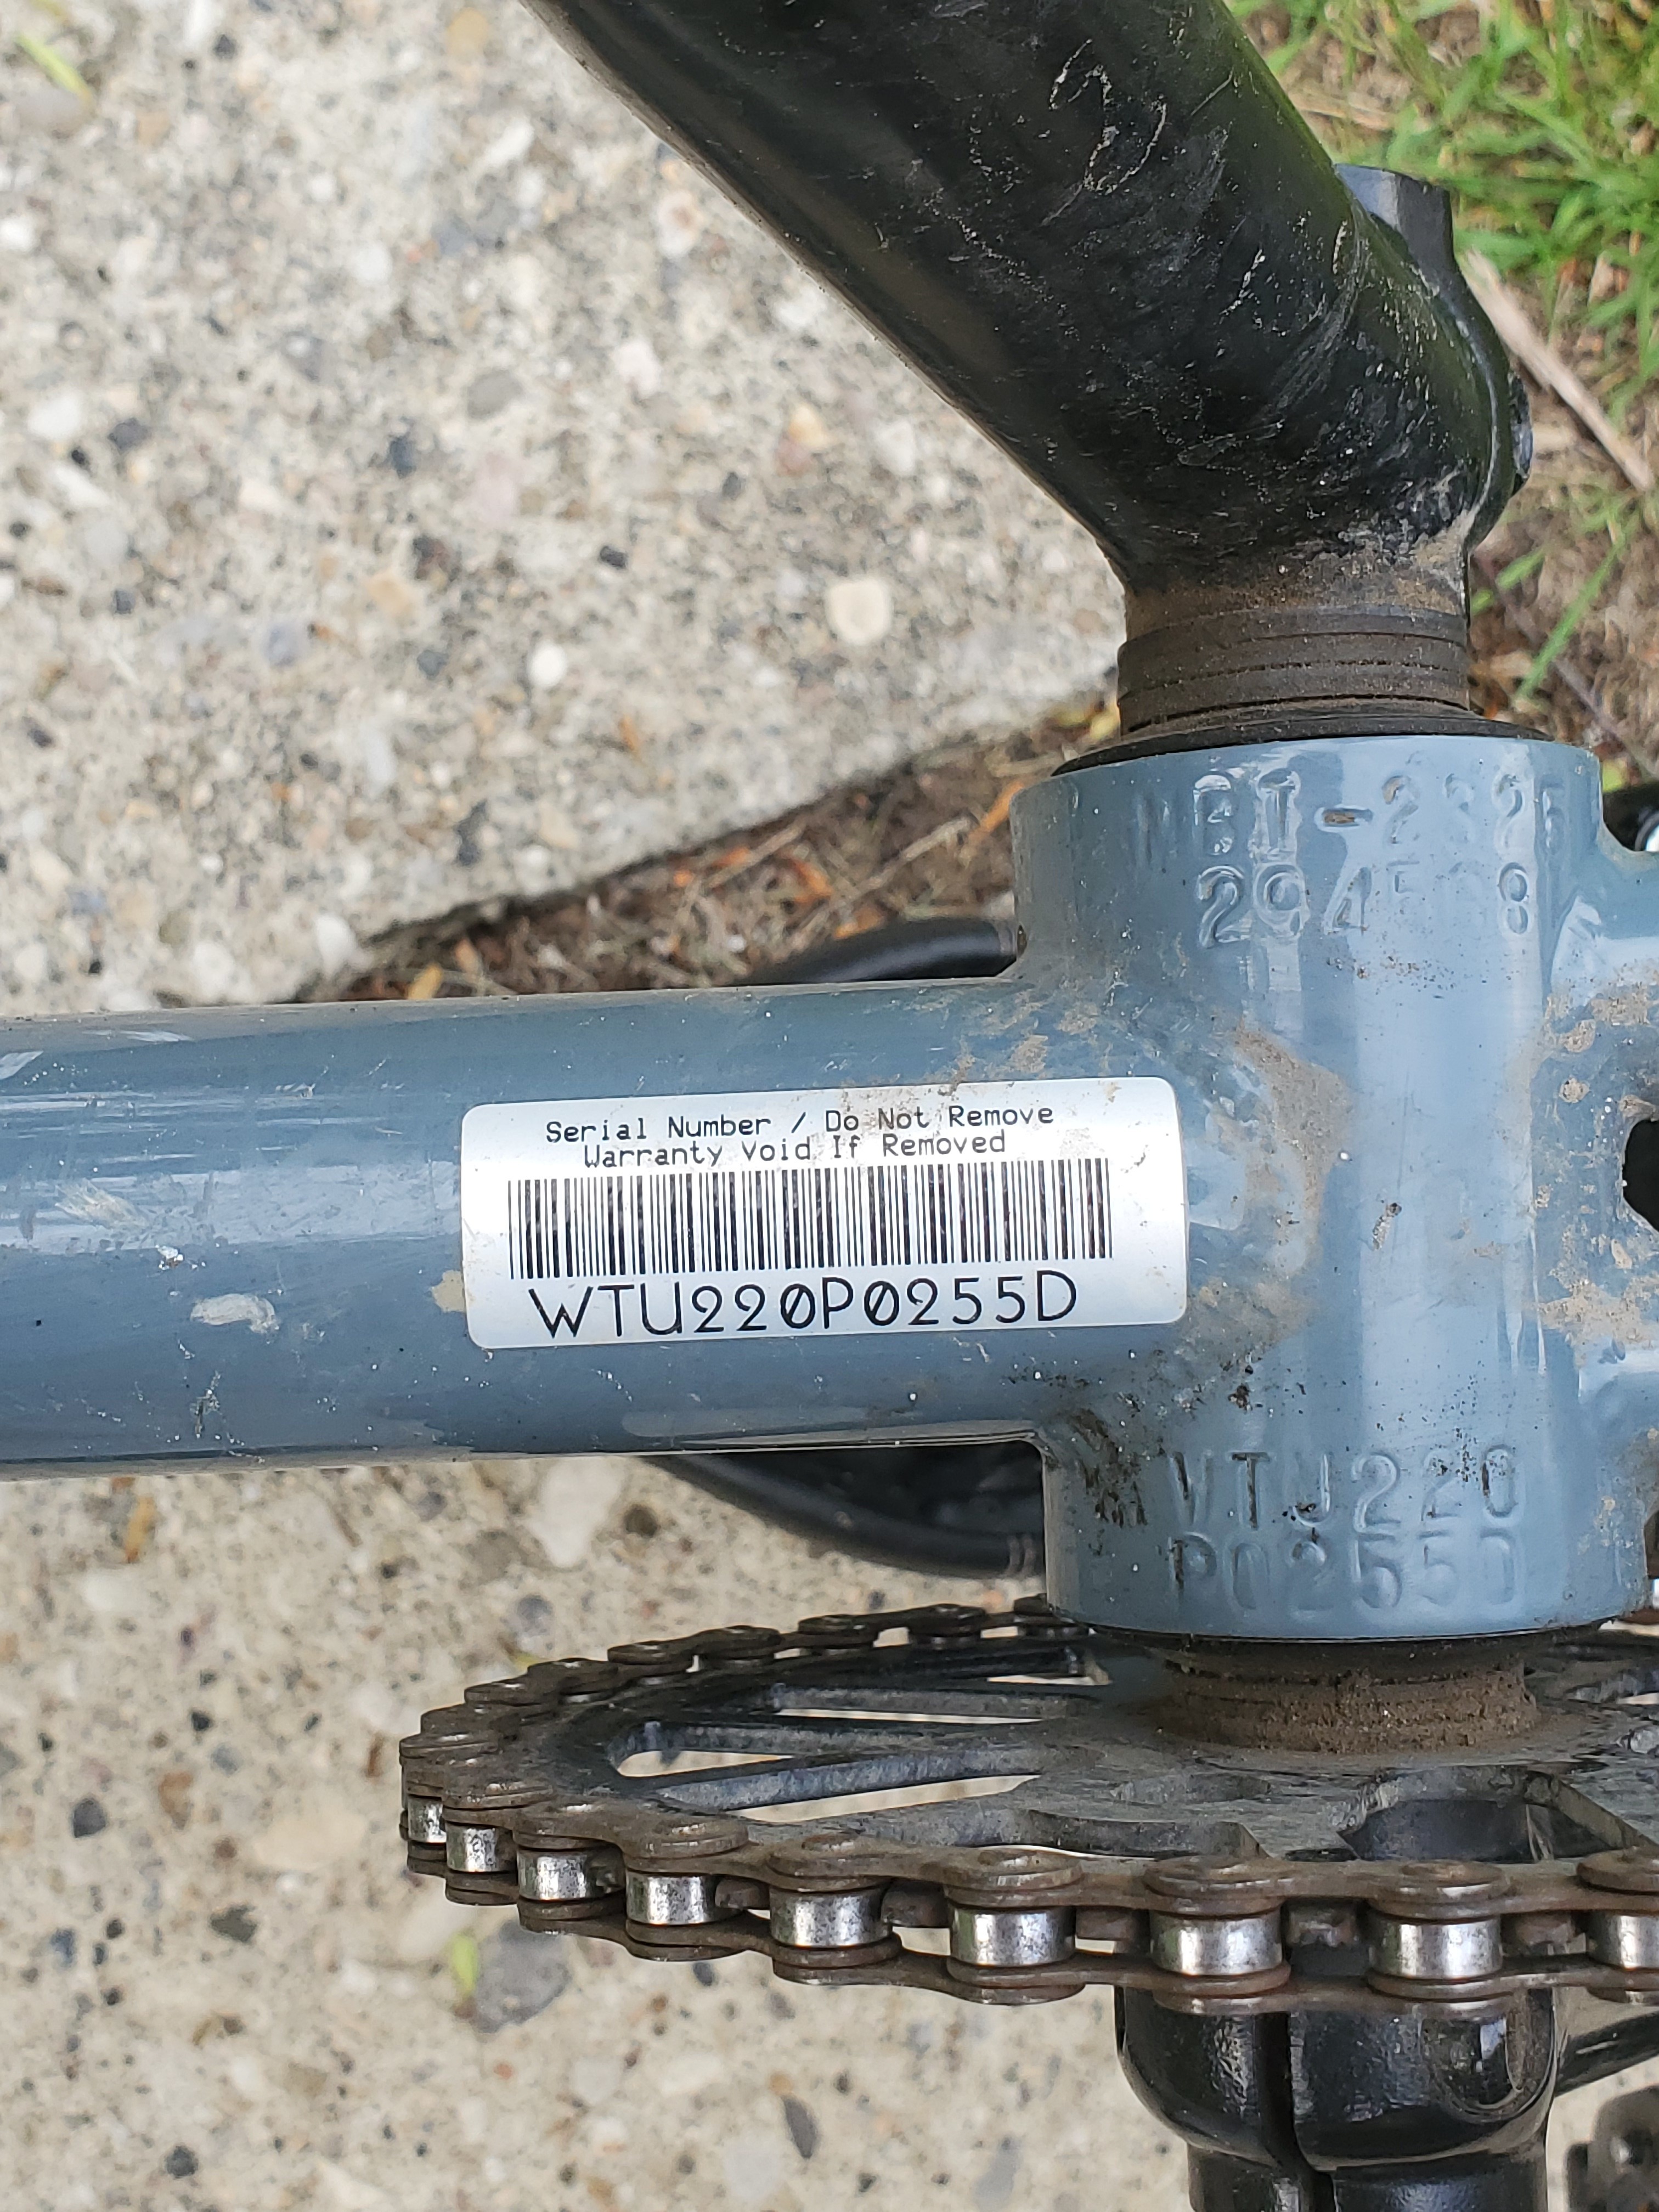 Mirraco Bike Serial Number